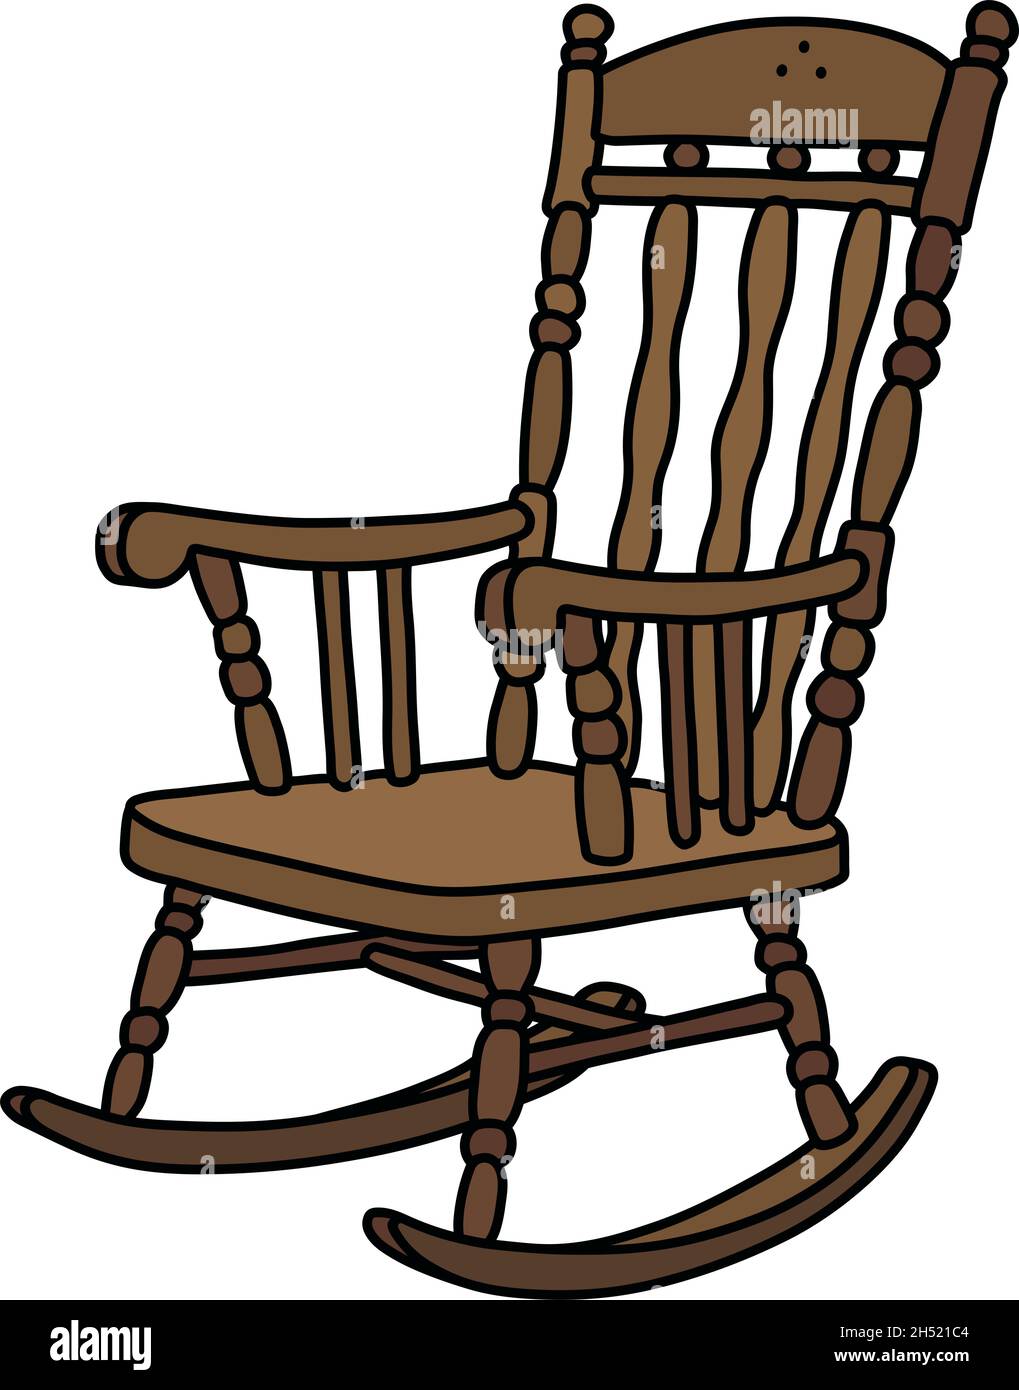 Il disegno a mano vettorizzato di una vecchia sedia a dondolo in legno  Immagine e Vettoriale - Alamy